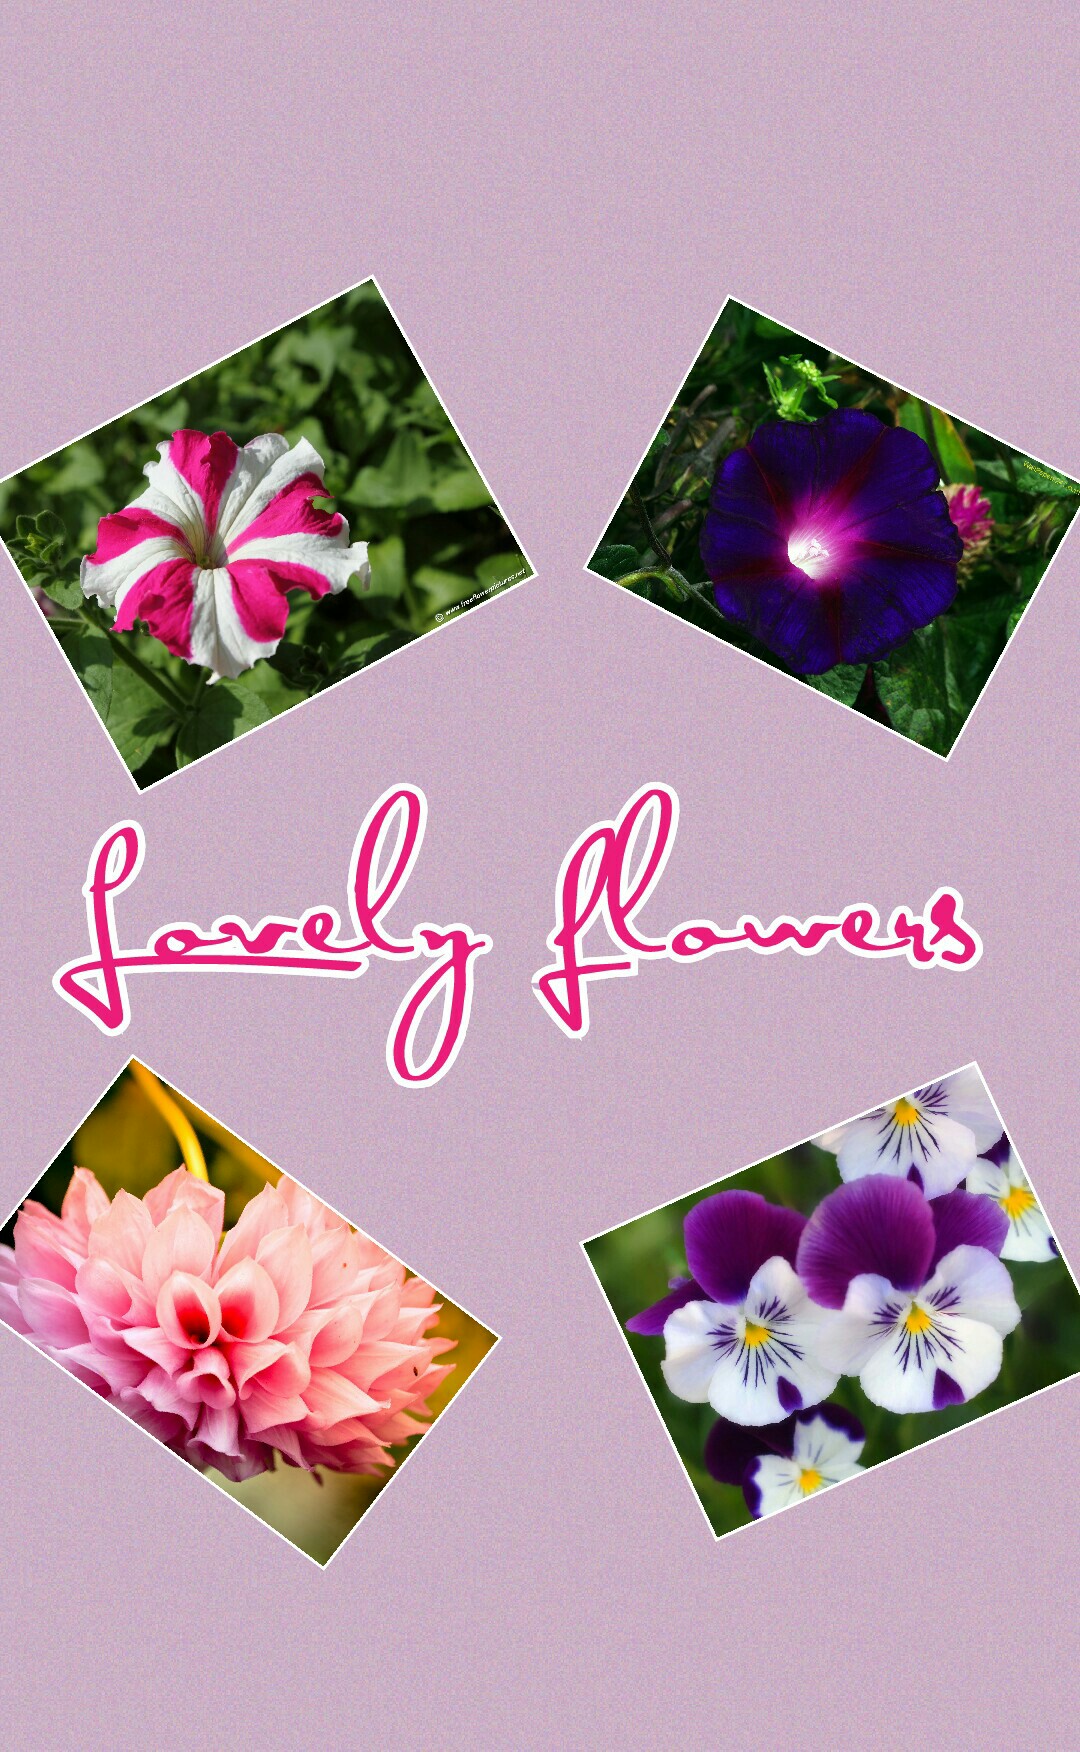 lovely flowers